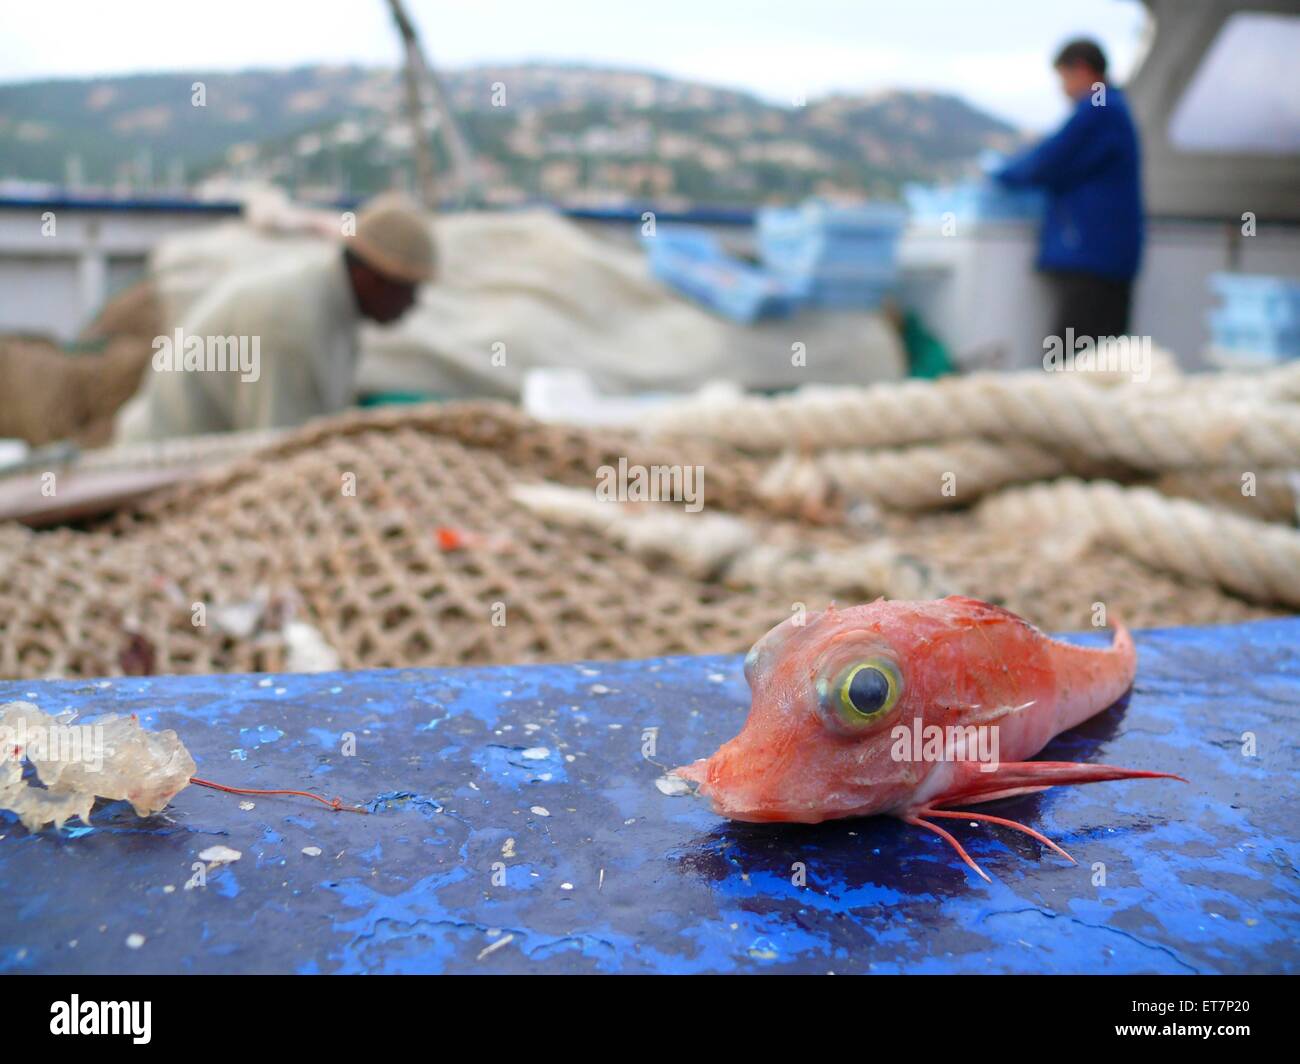 Roter Knurrhahn, Seeschwalbenfisch (Trigla lucerna, Chelidonichthys lucerna), Fischer saeubern Fang auf Fischerboot in Hafen, Ba Stock Photo